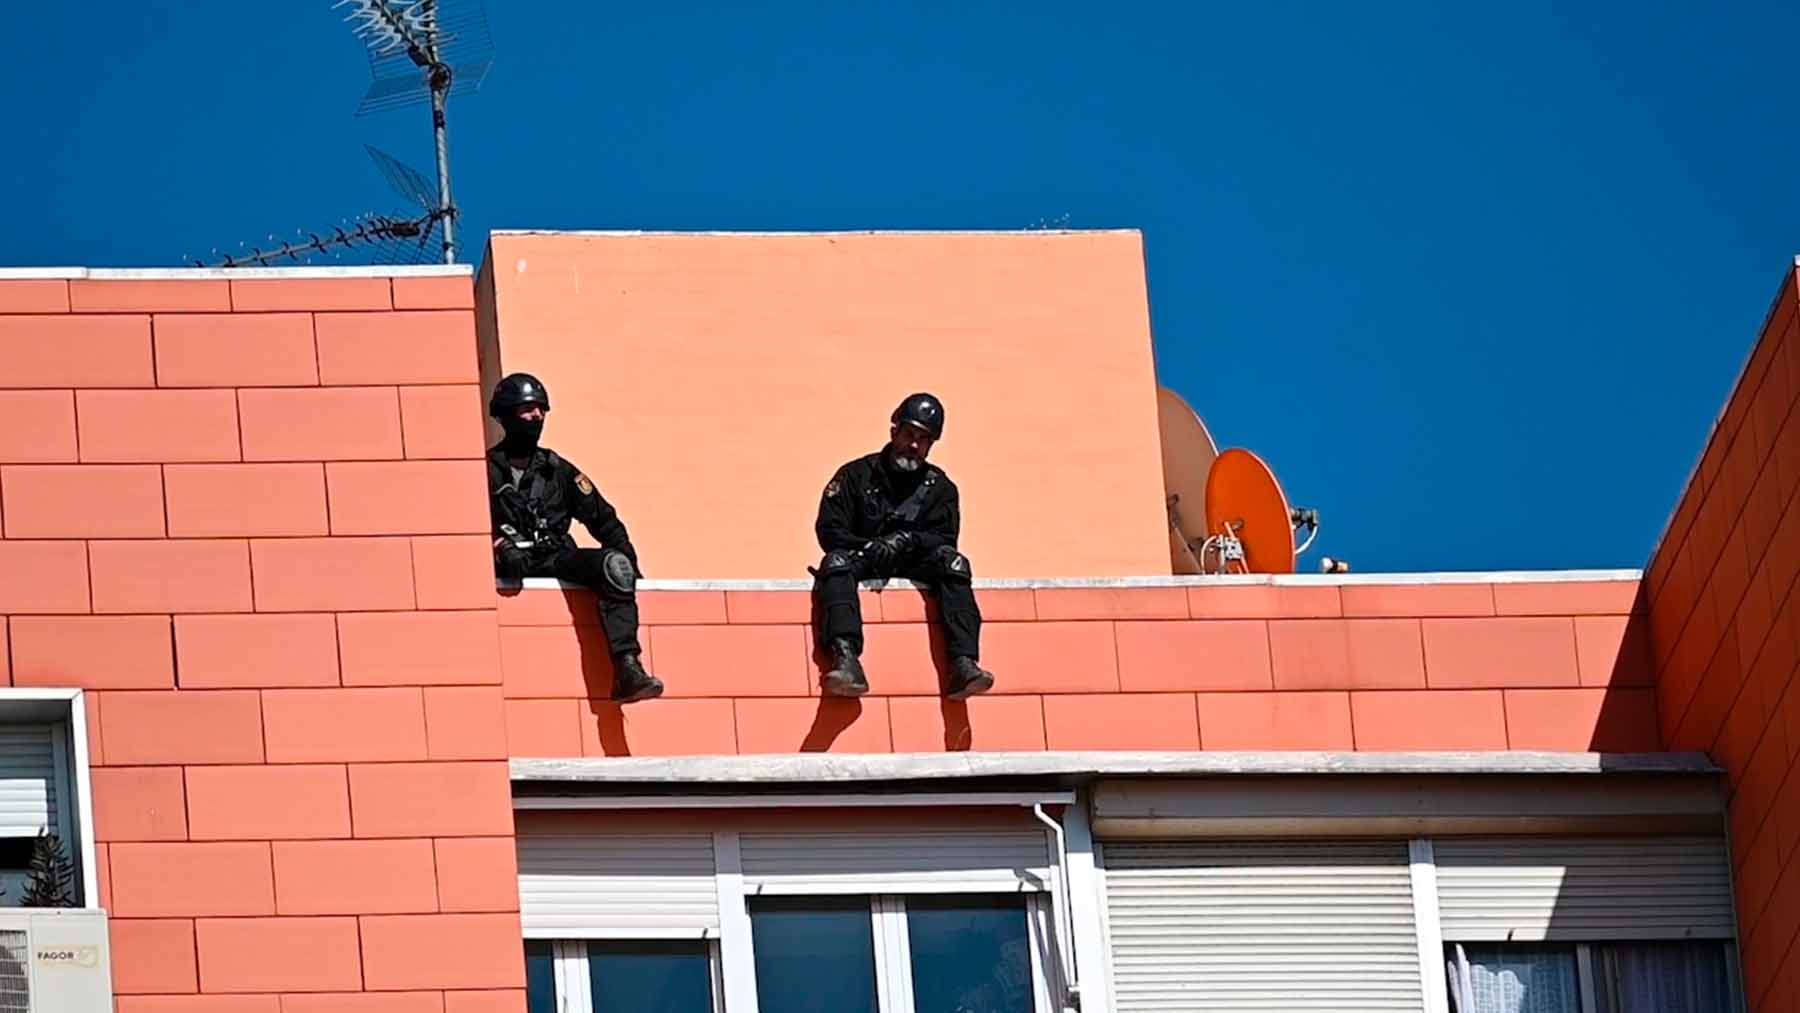 Geos en el edificio de Coslada donde se han atrincherado un hombre armado.